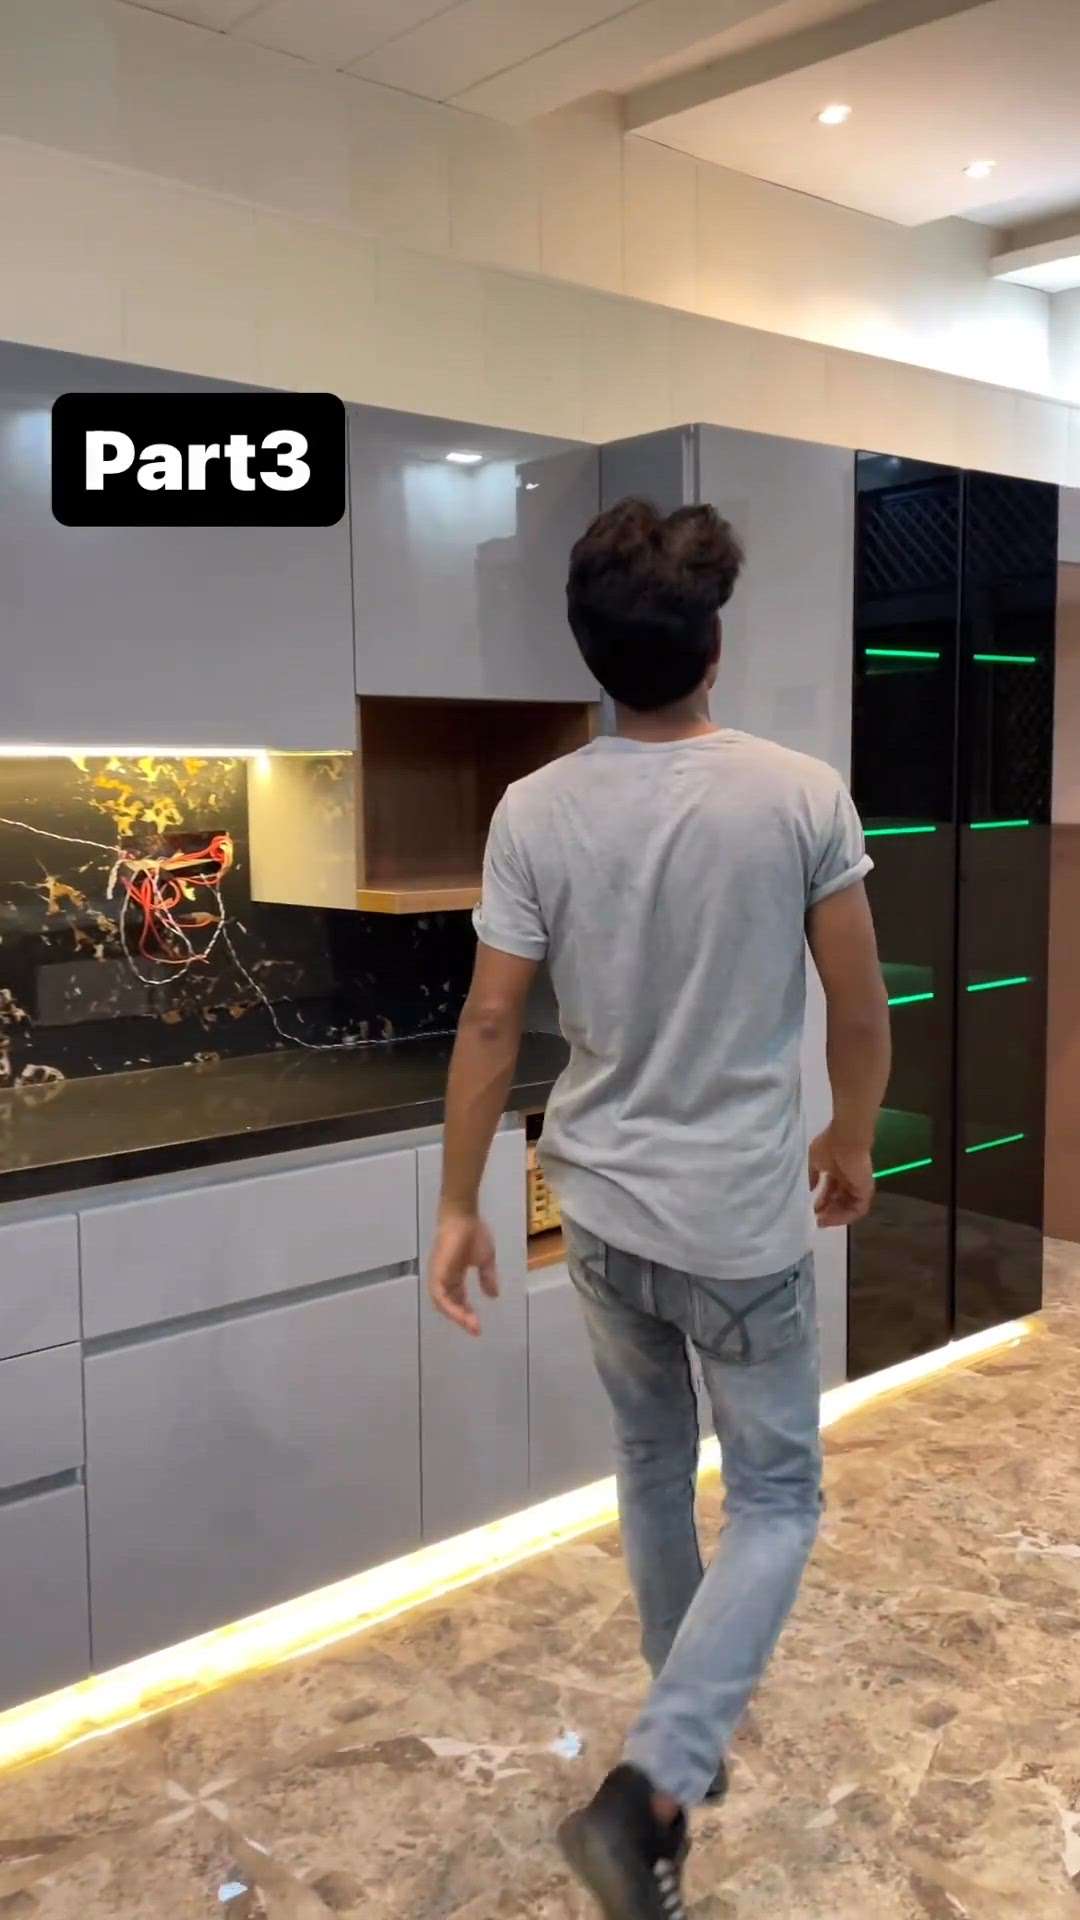 pantry kitchen modular modular furniture modellor kitchen ask KoloApp  #ModularKitchen  #ask  #Rk  #koloapp  #koloviral  #Modularfurniture